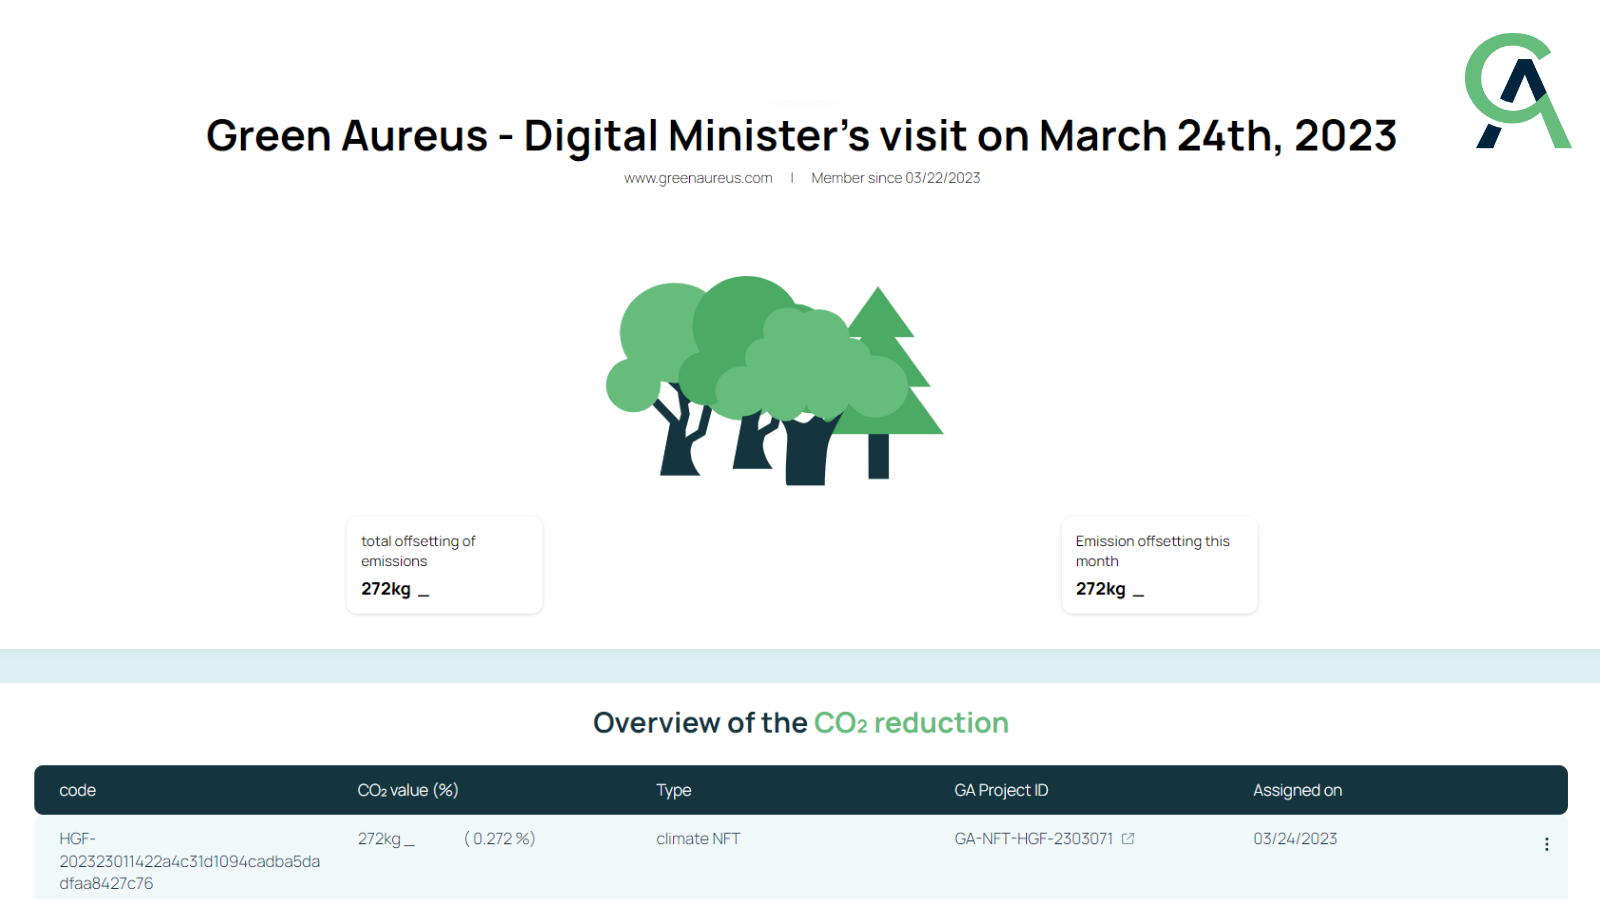 Digitalministerin zu Besuch bei Green Aureus